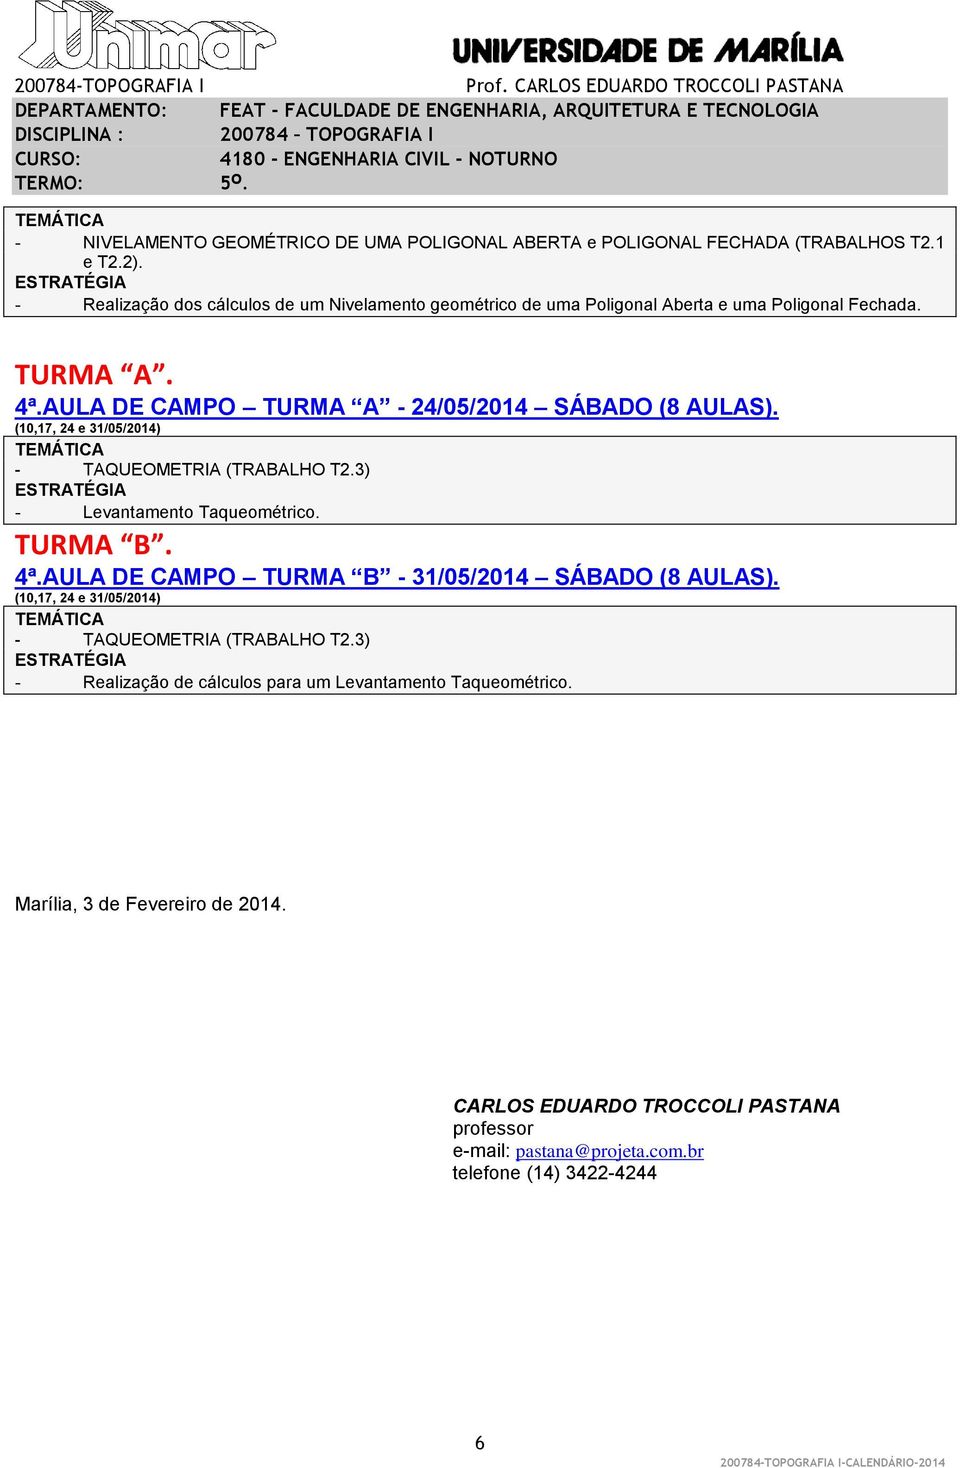 (10,17, 24 e 31/05/2014) - TAQUEOMETRIA (TRABALHO T2.3) - Levantamento Taqueométrico. 4ª.AULA DE CAMPO TURMA B - 31/05/2014 SÁBADO (8 AULAS).